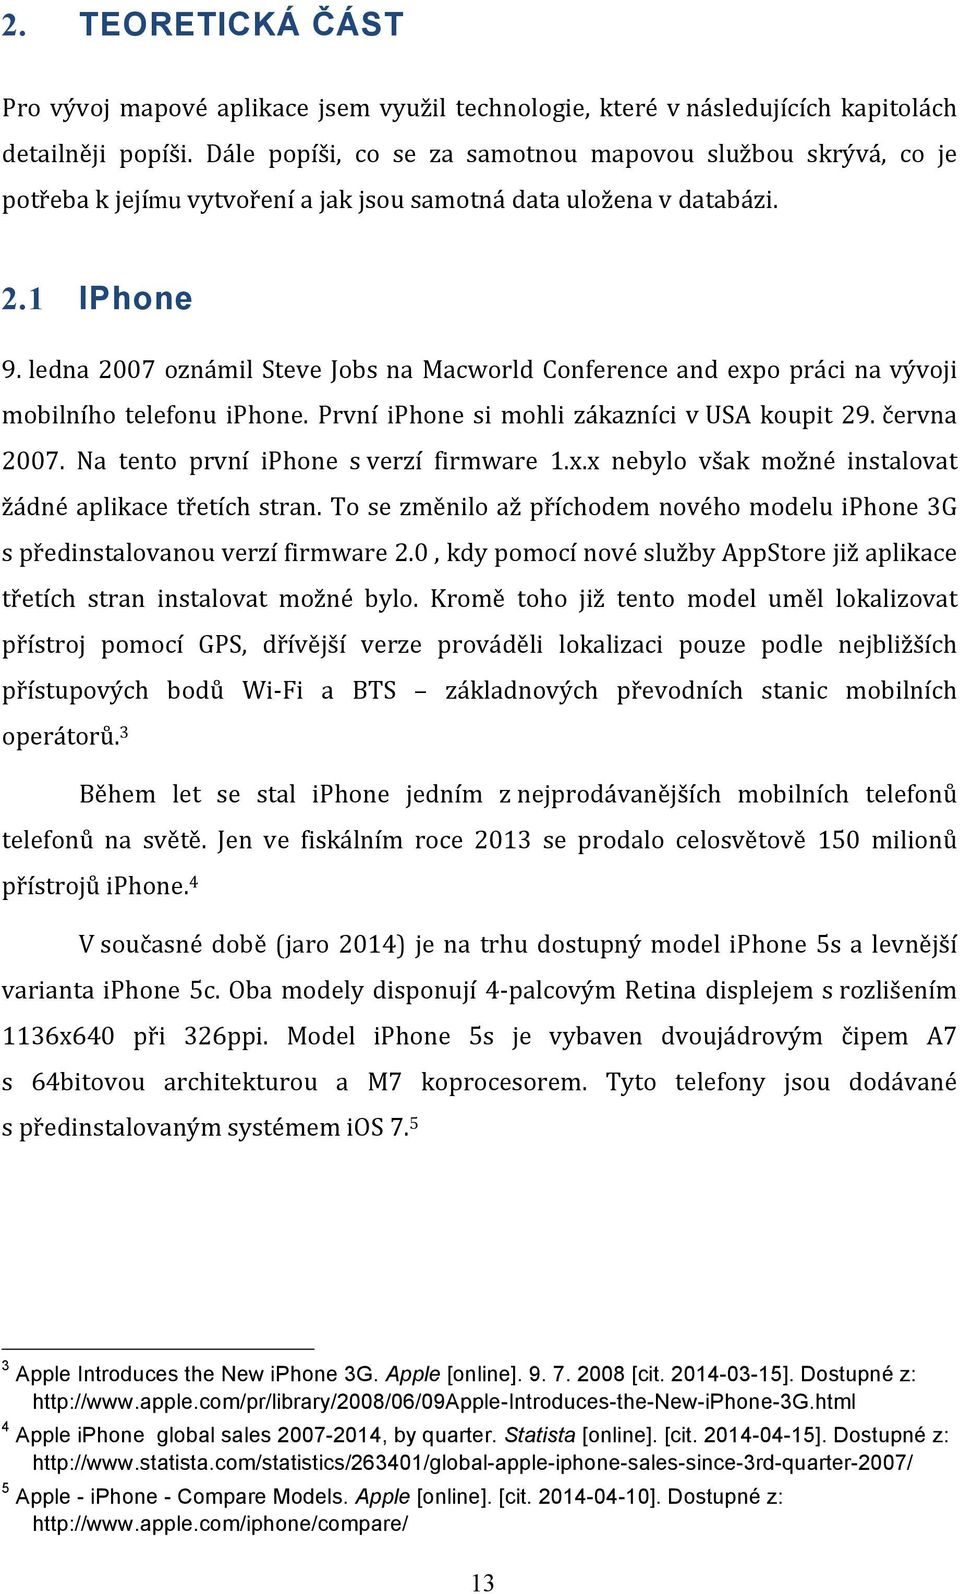 ledna 2007 oznámil Steve Jobs na Macworld Conference and expo práci na vývoji mobilního telefonu iphone. První iphone si mohli zákazníci v USA koupit 29. června 2007.